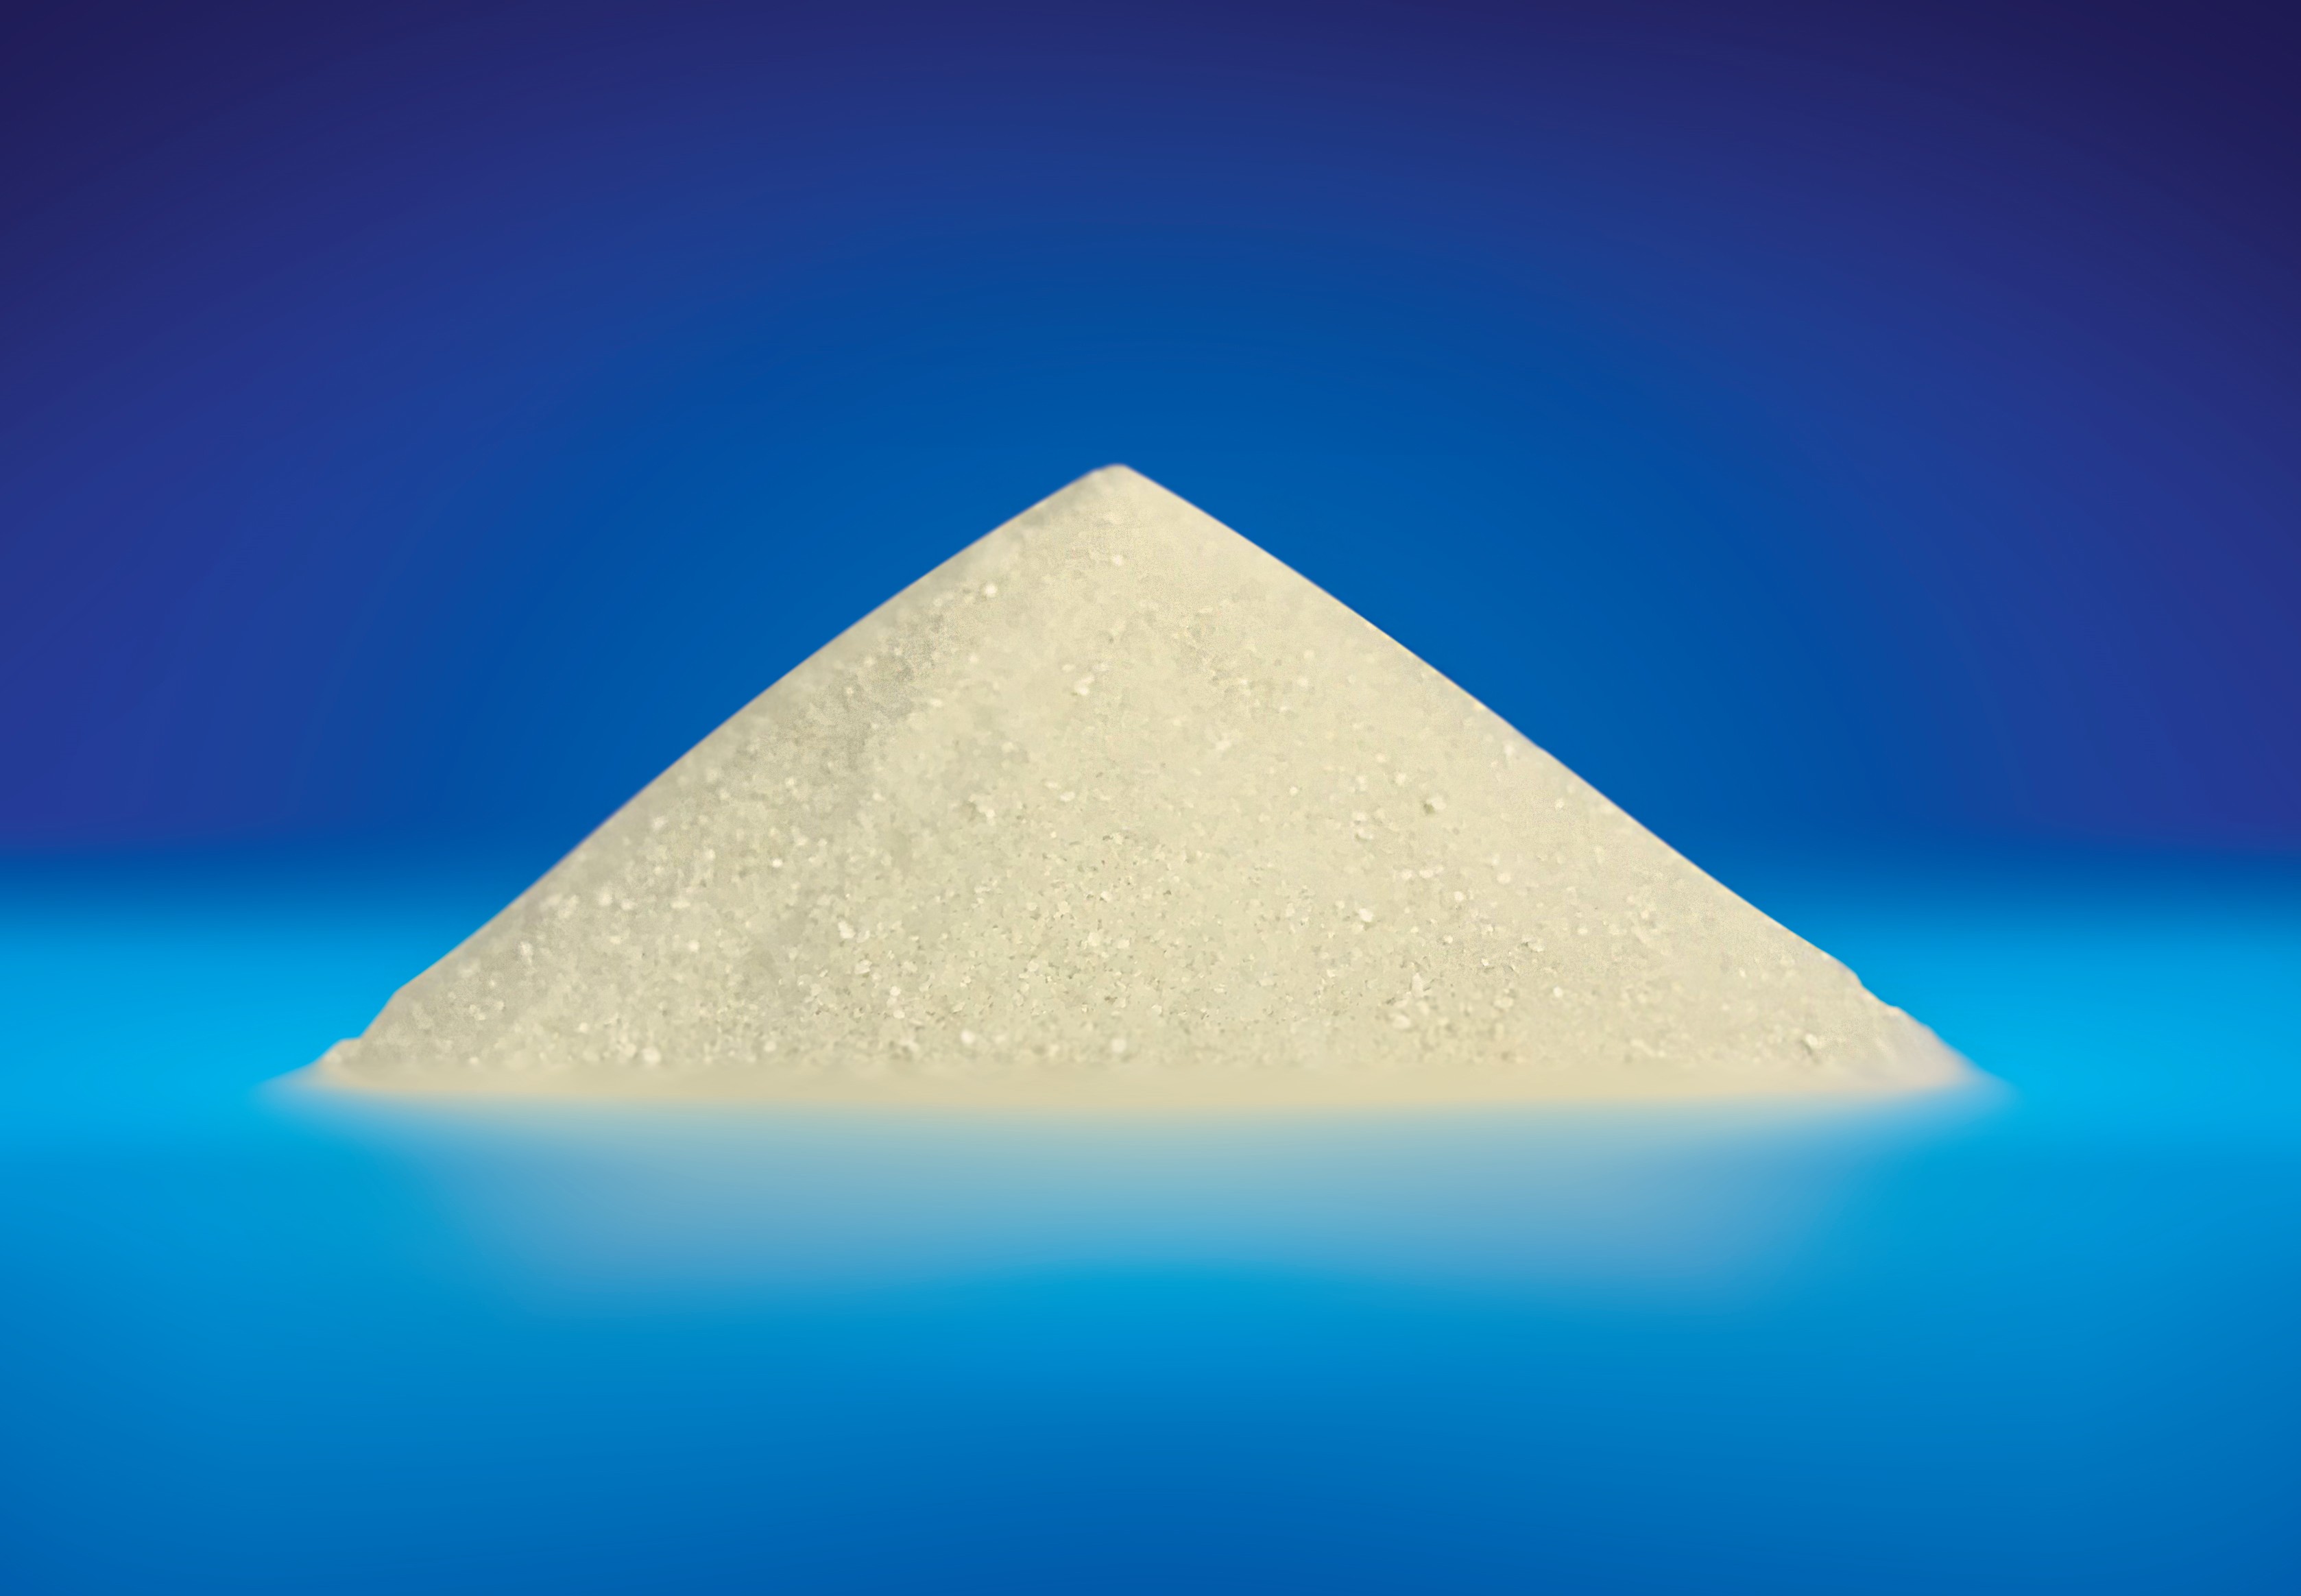 Ferrous Glycine Chelate Cream Powder Animal Feed Additive 7